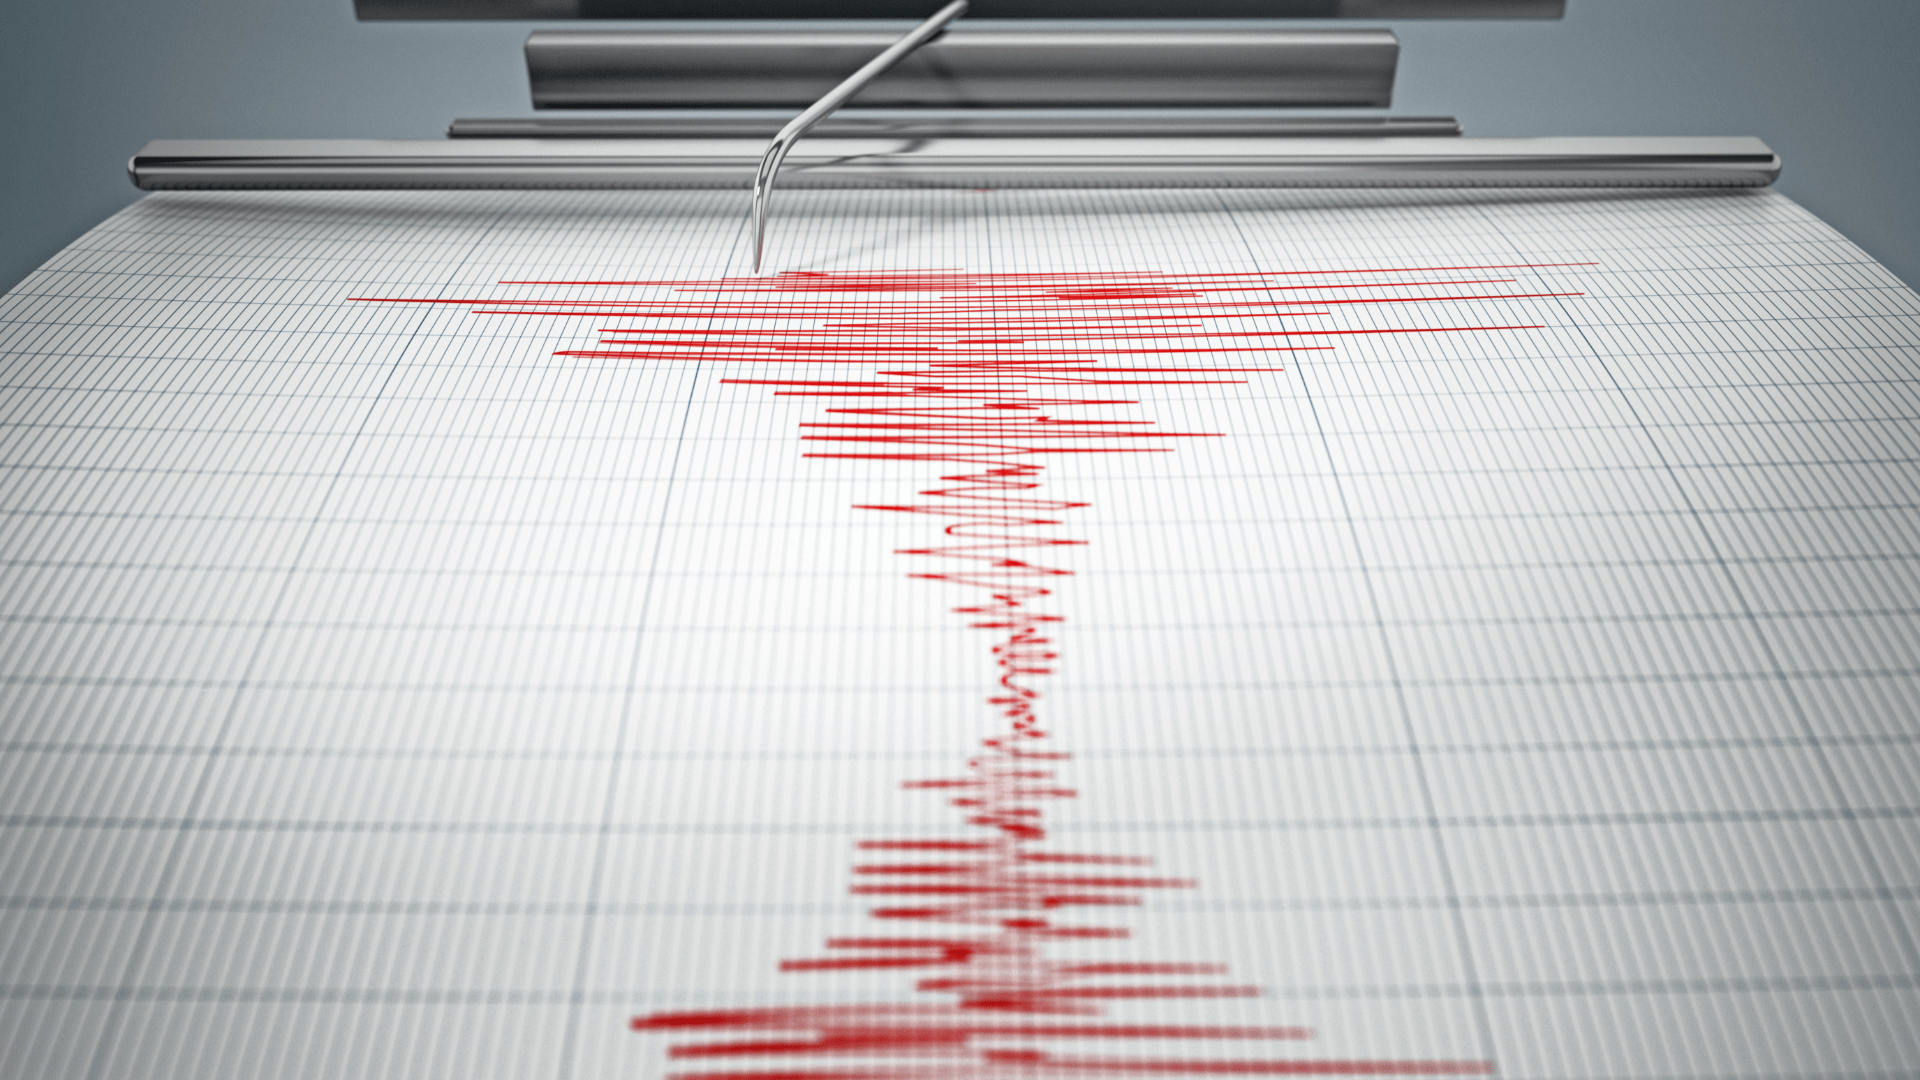 Землетрясение магнитудой 6,0 ощутили жители пяти штатов и столицы Мексики